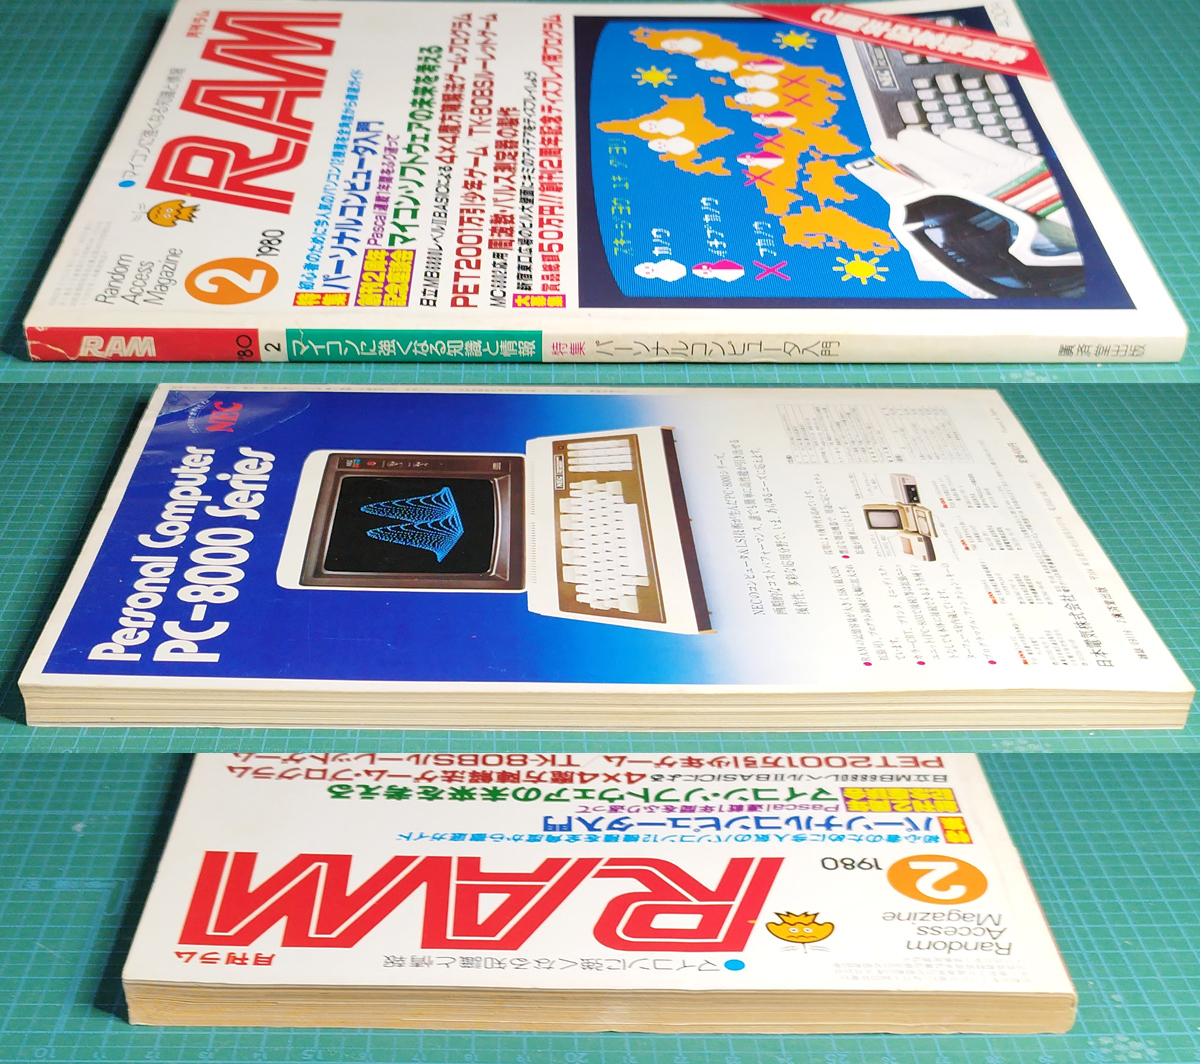 月刊ラム RAM 1980年2月号 / MB-6880L2 TK-80BS EX-80 PET2001 万引き少年ゲーム マイコン マイクロコンピュータ / 廣済堂出版の画像3